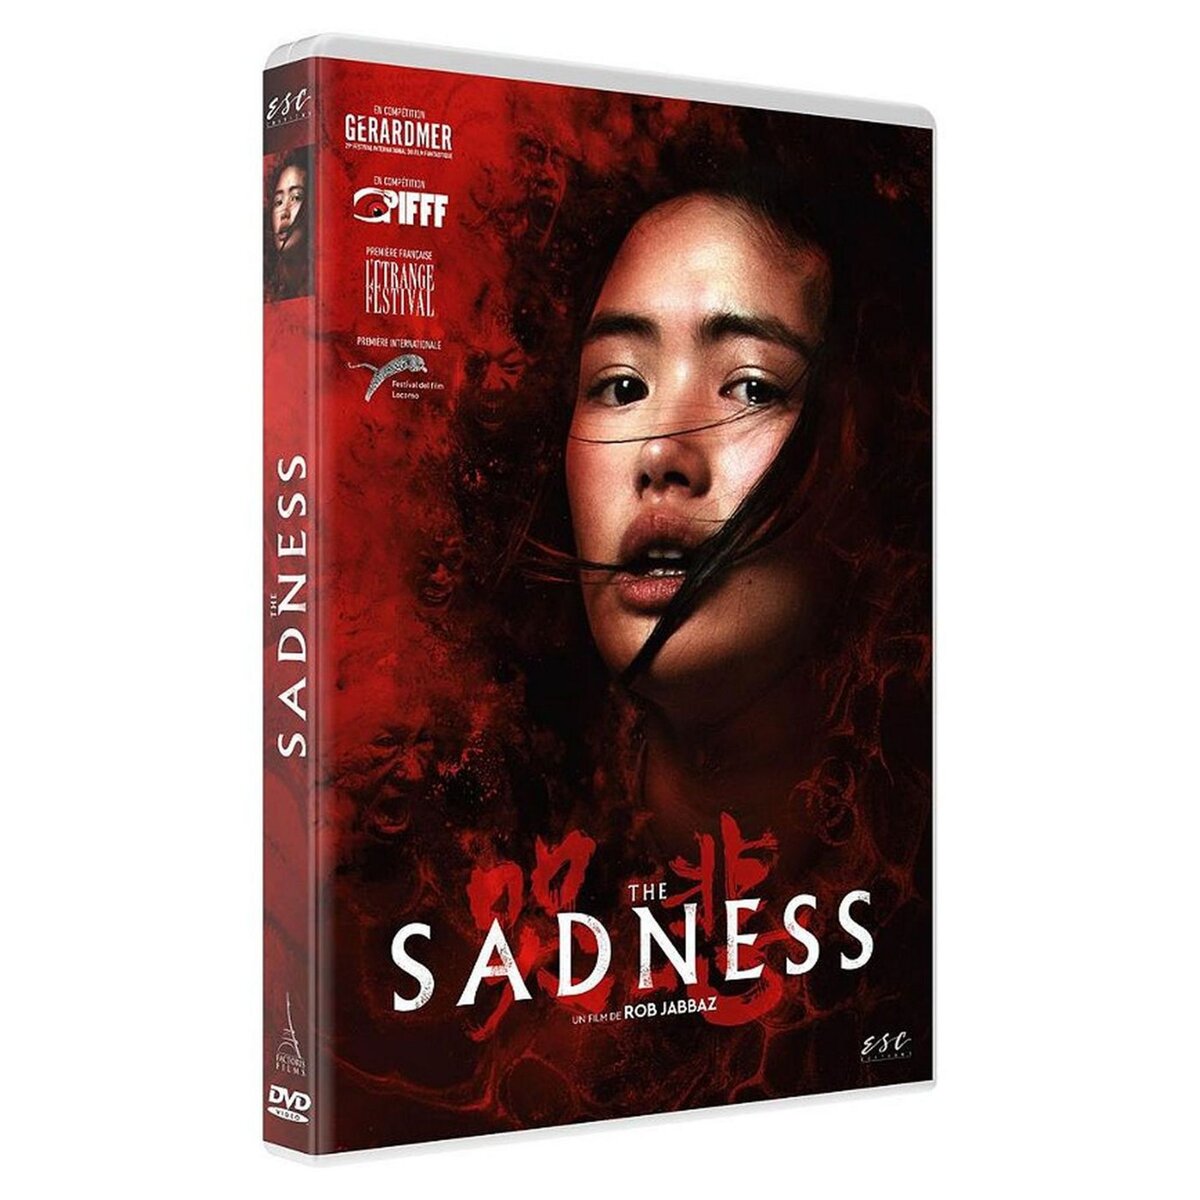 The Sadness DVD